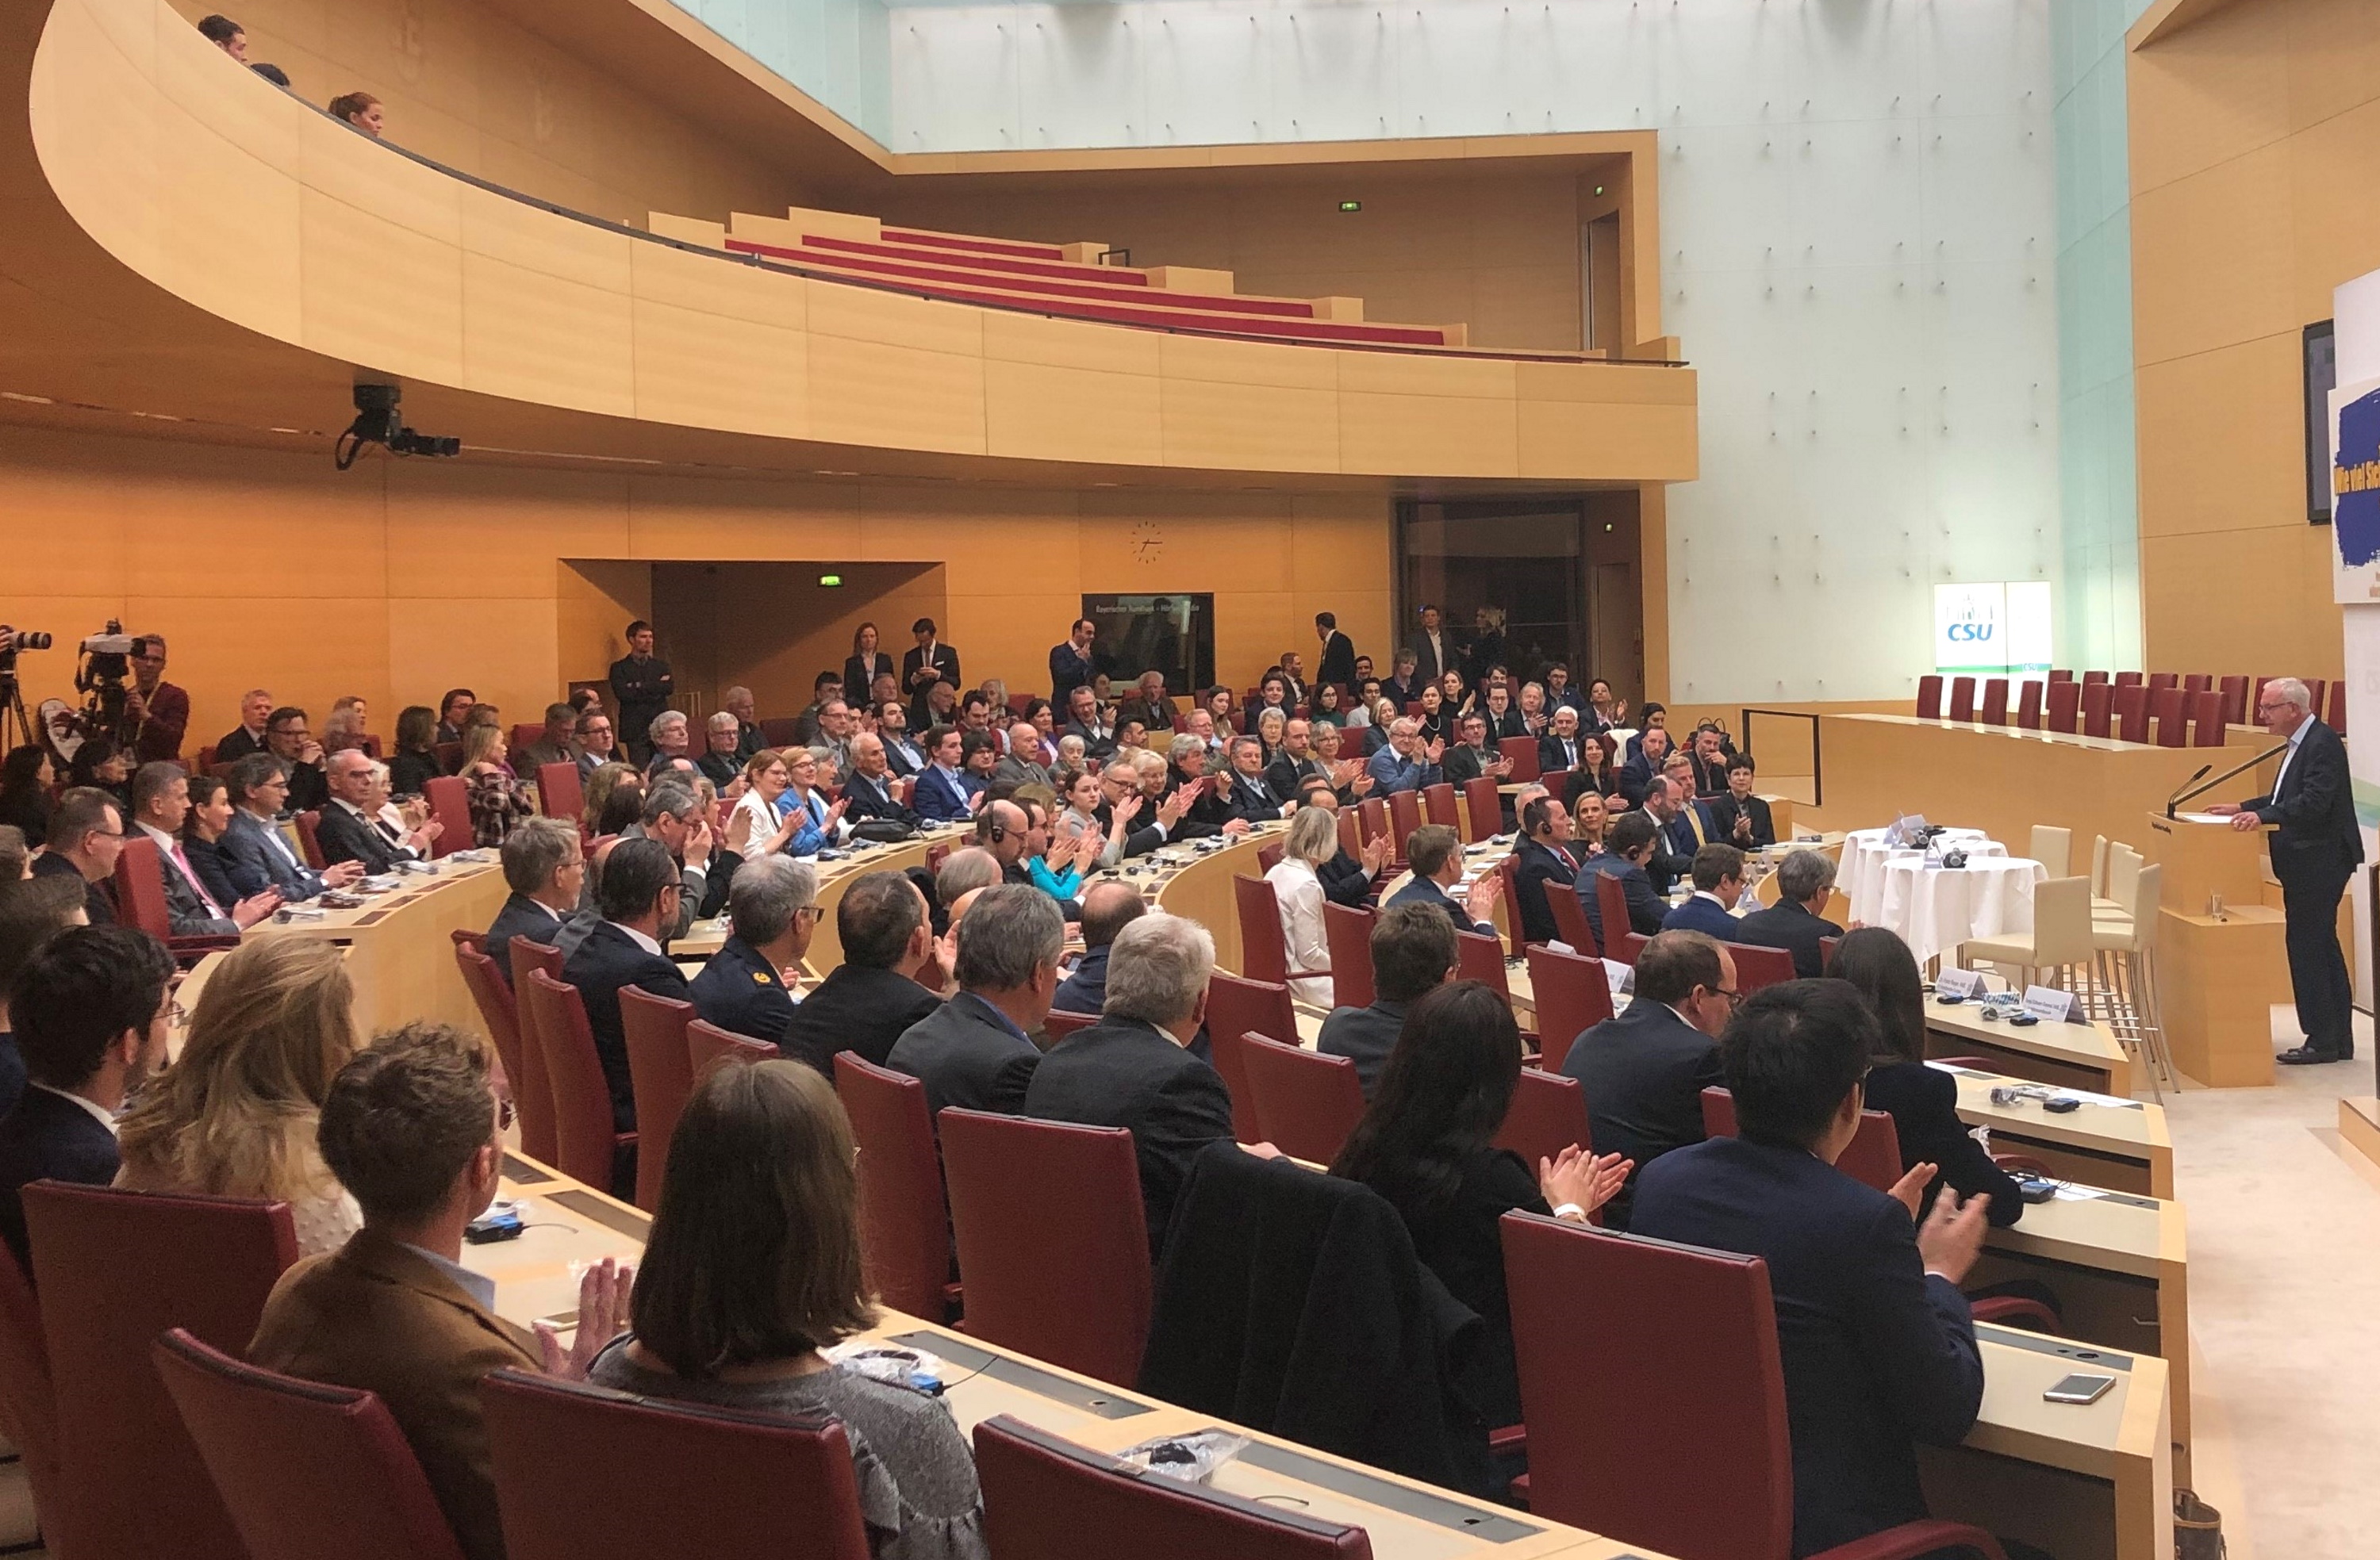 11.21.2020 - Wie viel Sicherheit braucht Europa? Veranstaltung am Rande der Münchner Sicherheitskonferenz 2020 - Die Veranstaltung stieß auf große Resonanz, zahlreiche Gäste füllten den Plenarsaal des Landtags. (Foto: CSU-Fraktion) 